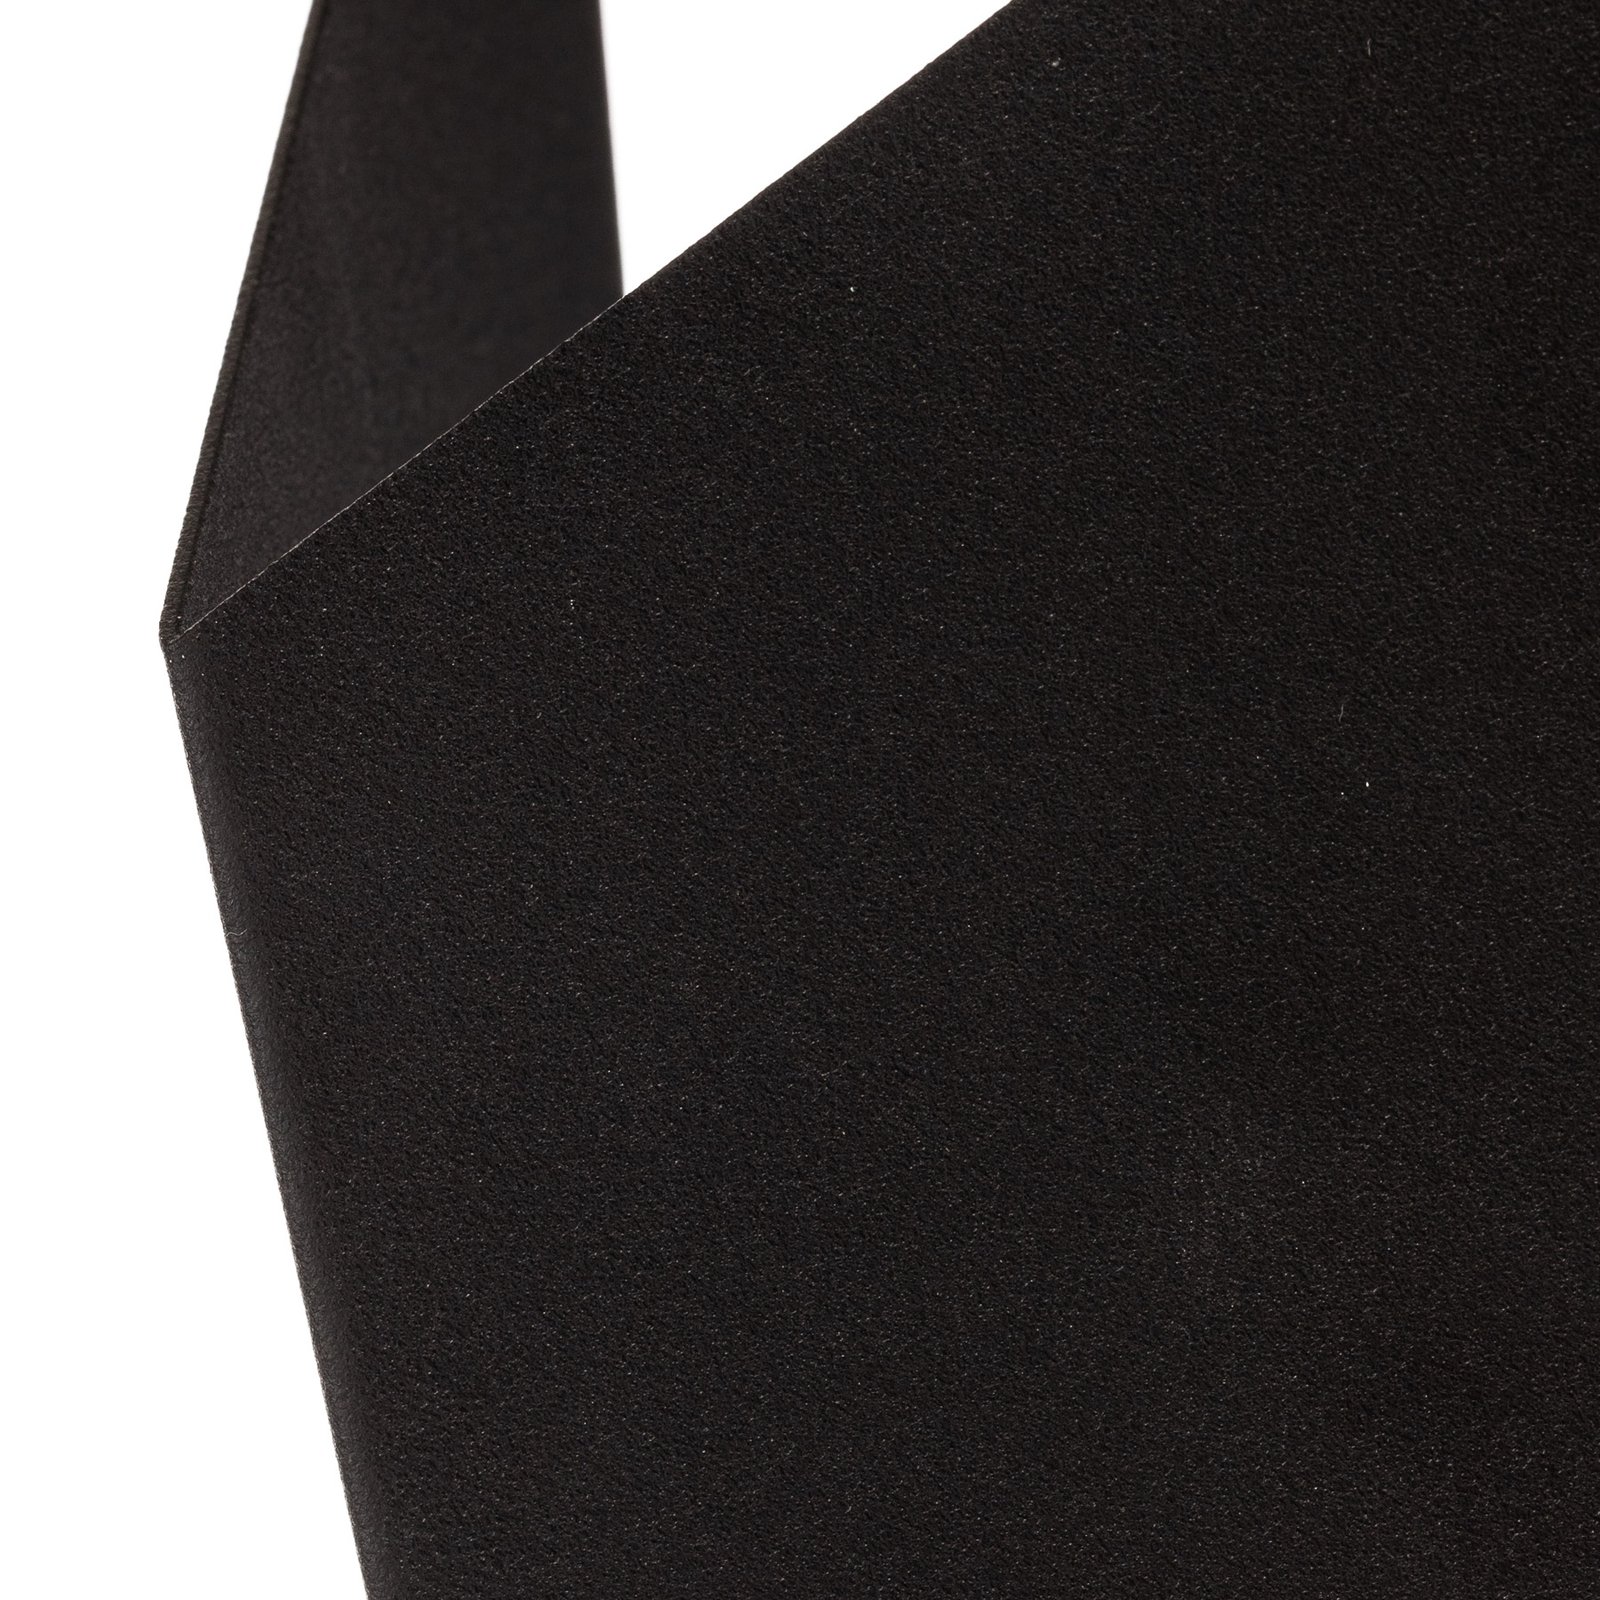 Vägglampa Form 4, svart, 19 x 30 cm